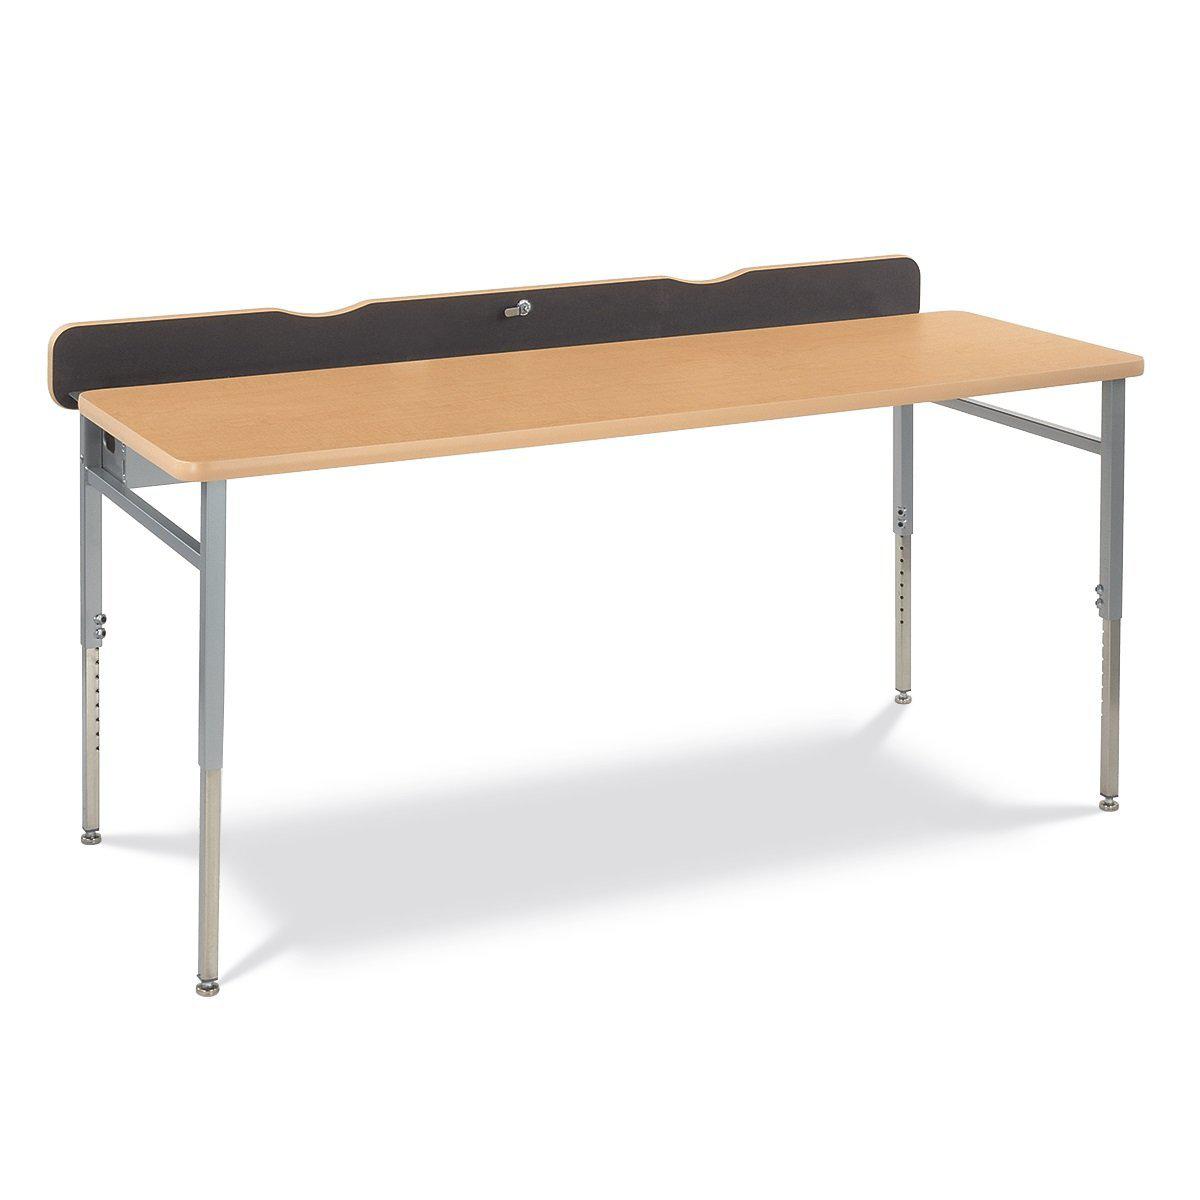 Nextgen Flip-Top Adjustable-Height Computer/Technology Tables, Dee NextGen Furniture, Inc.